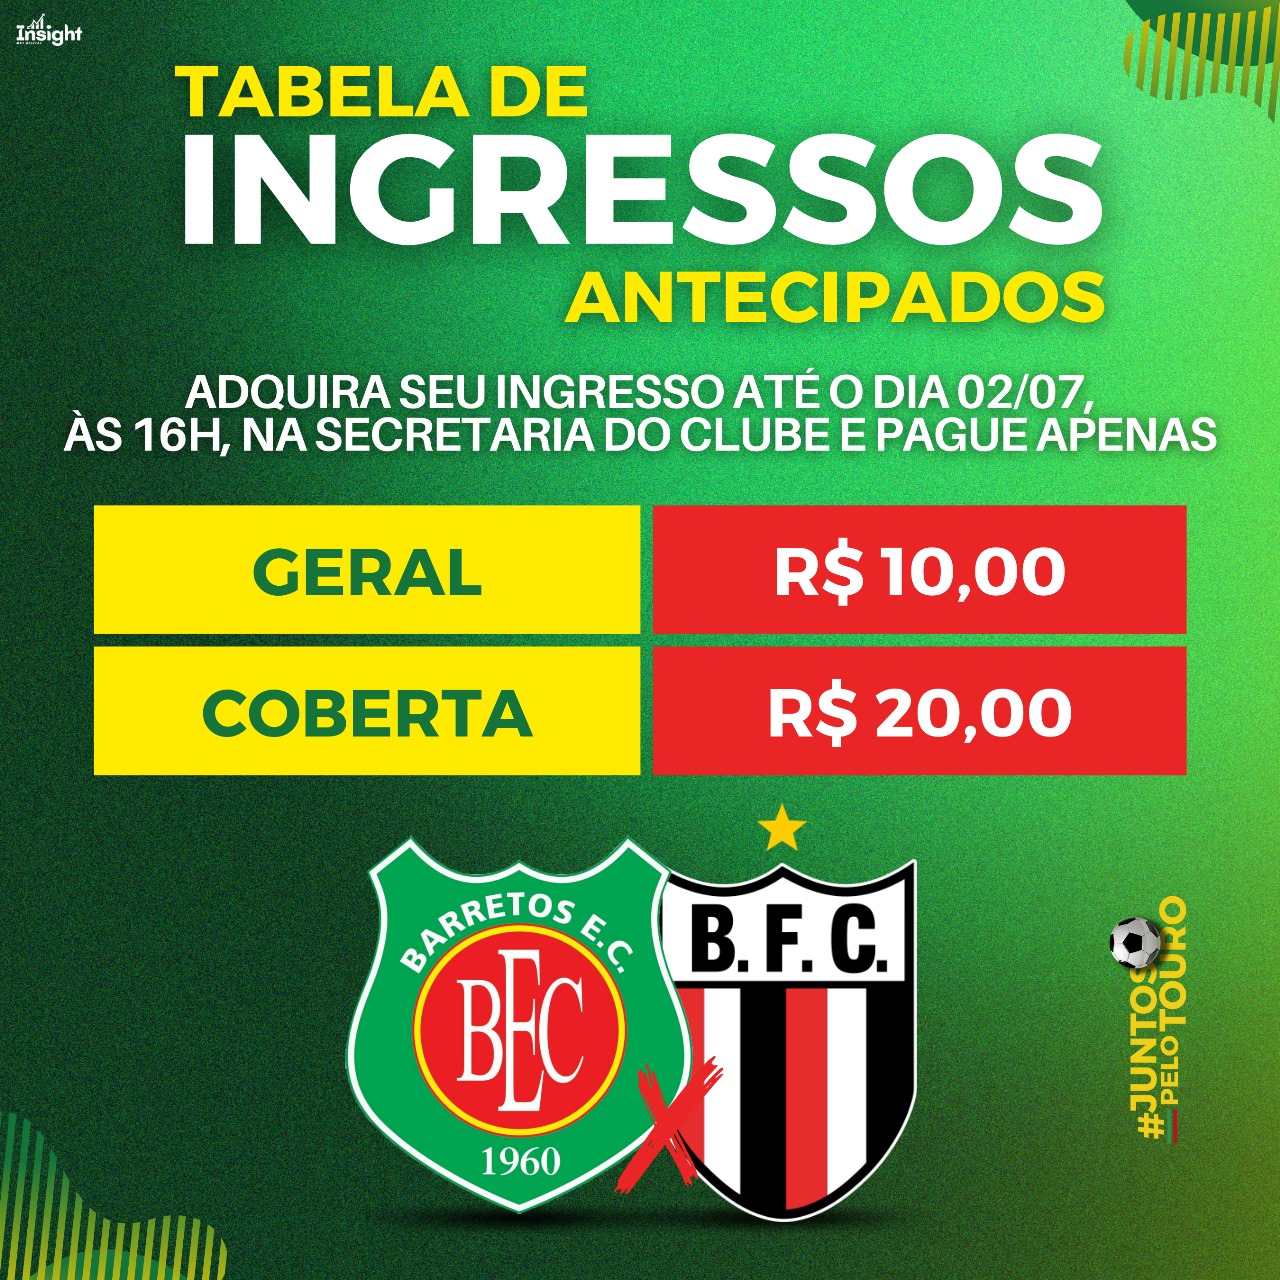 Ingressos à venda para Barretos e Botafogo